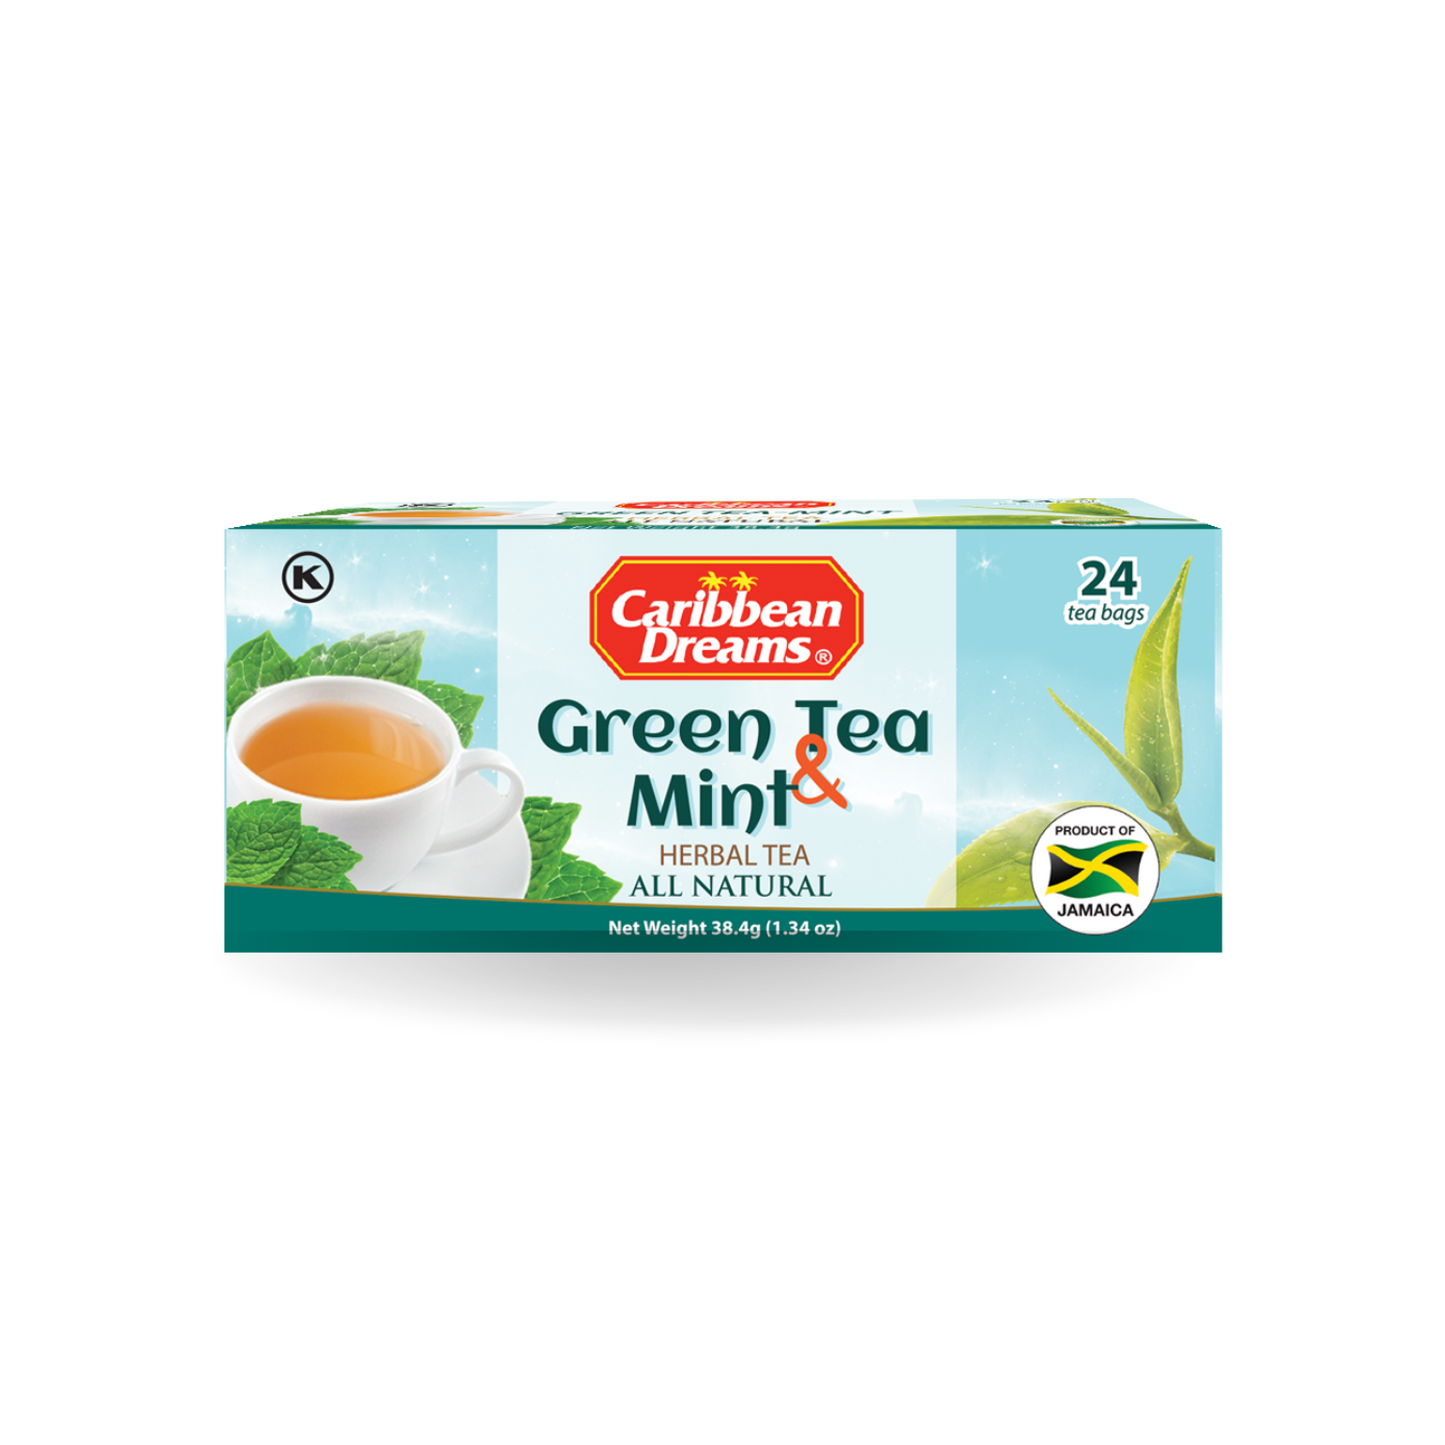 Caribbean Dreams Green Tea & Mint